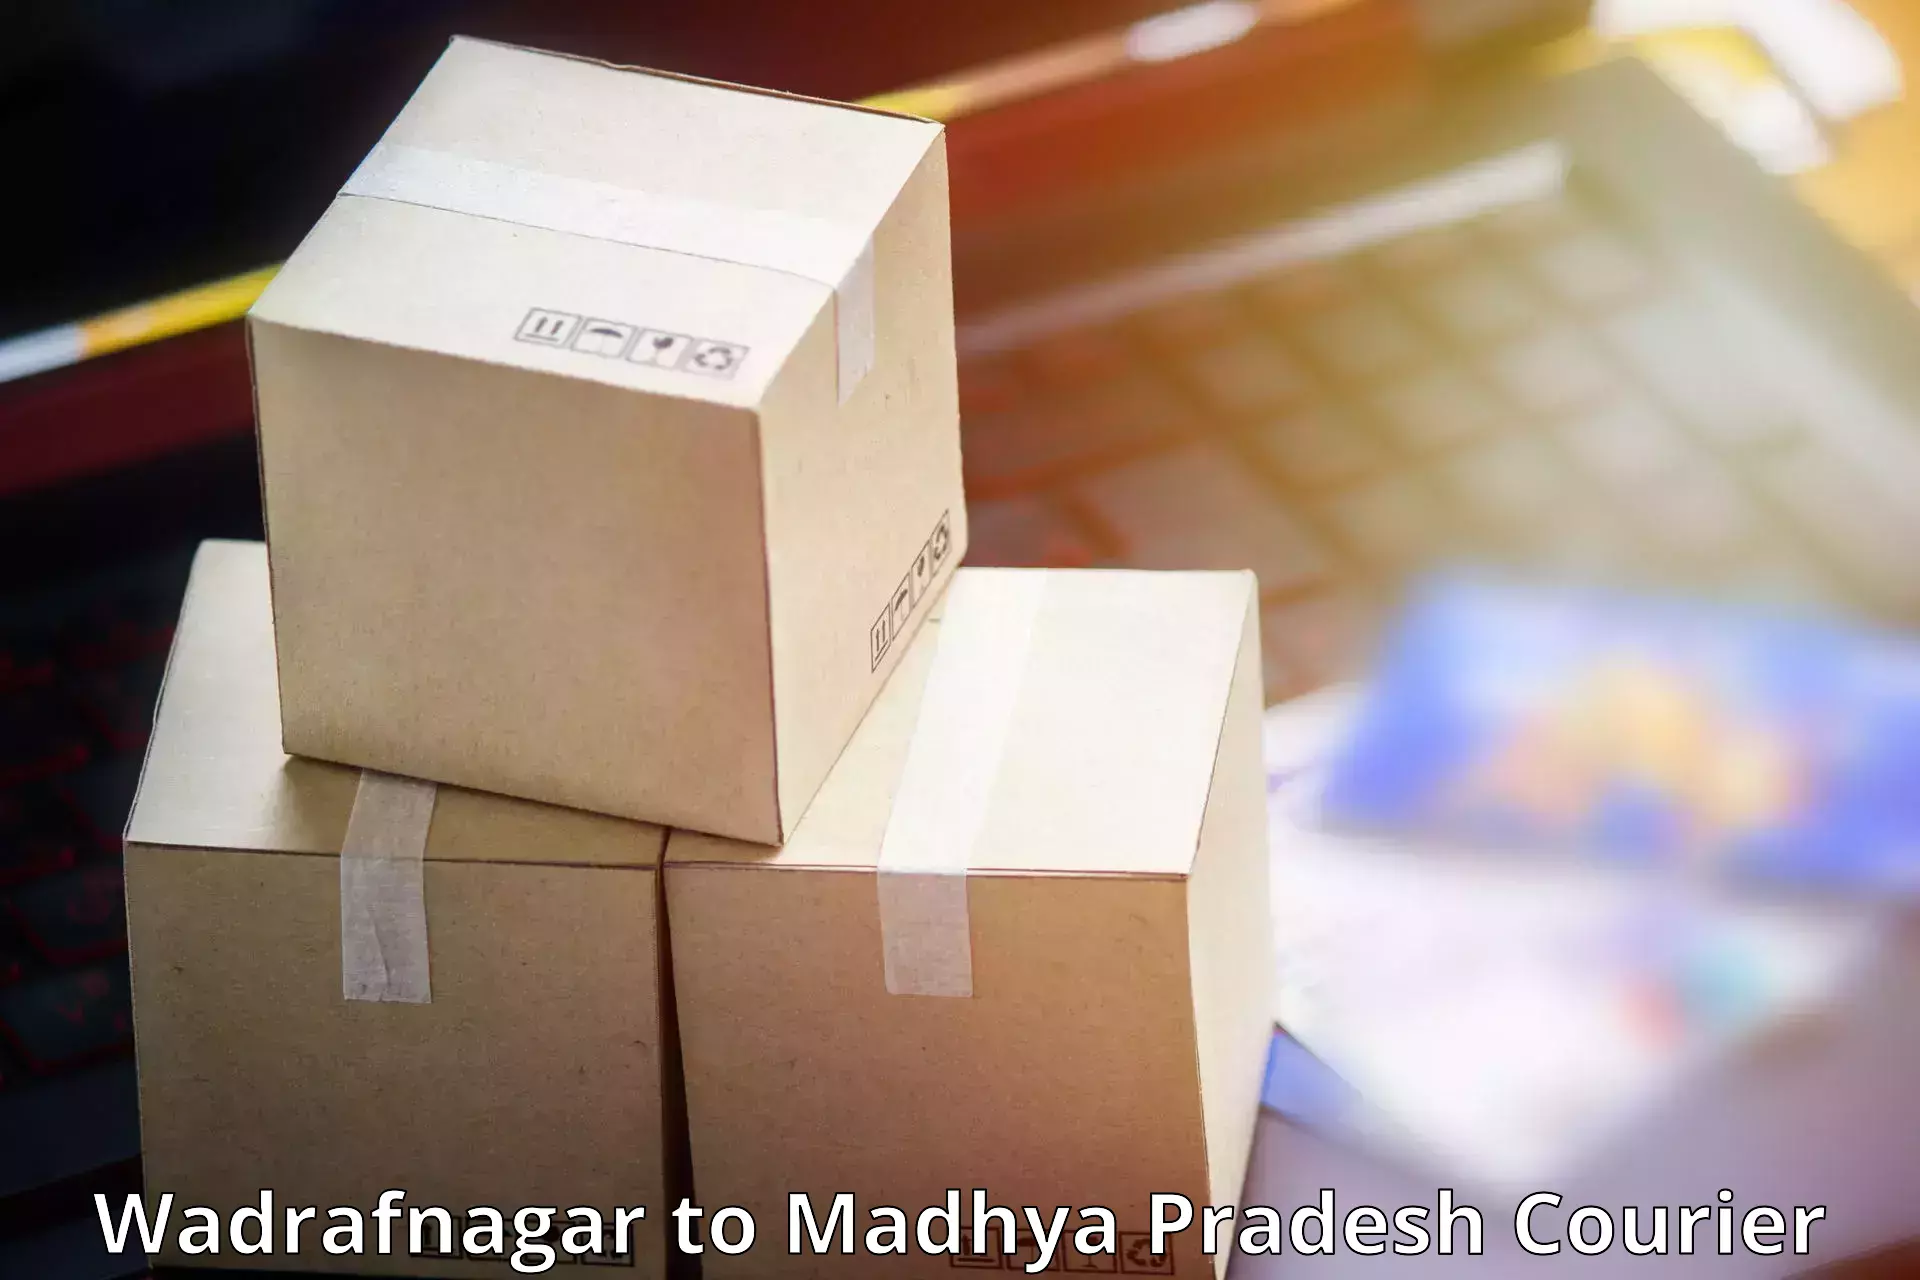 Customer-friendly courier services Wadrafnagar to Amarwara